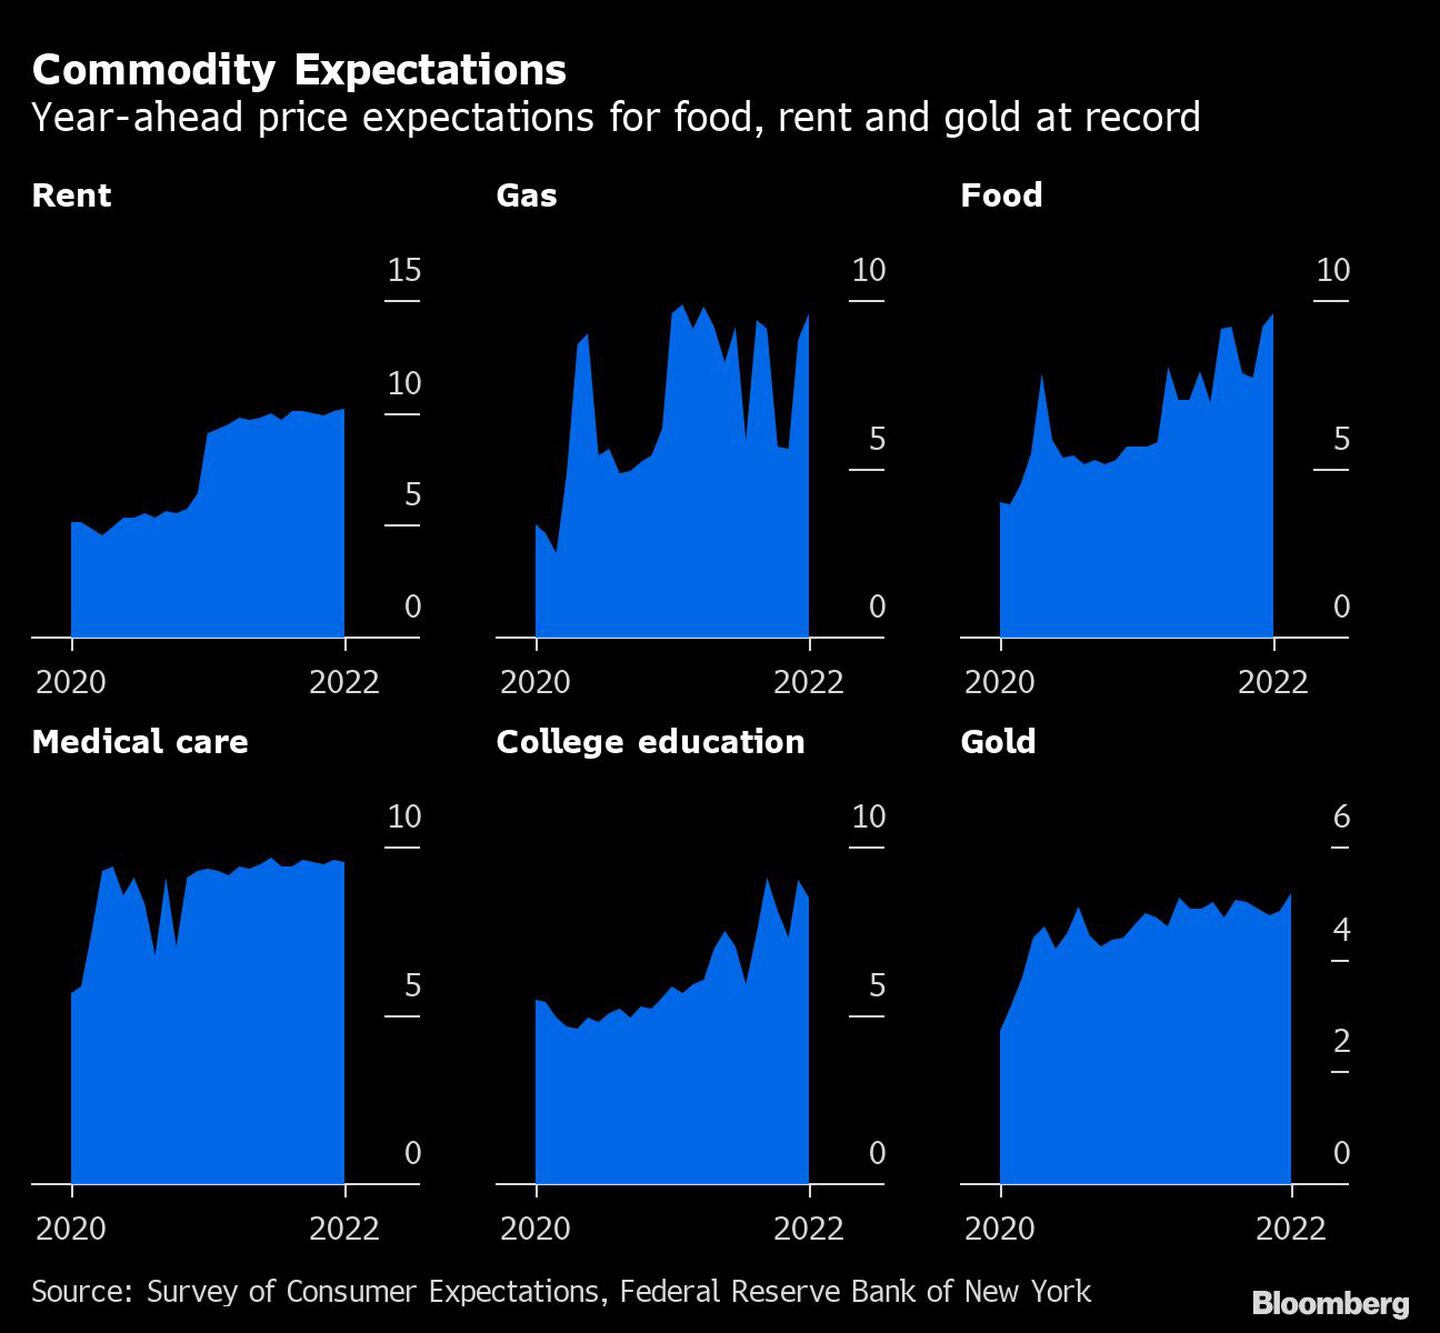  Las expectativas de precios de los alimentos, el alquiler y el oro a un año vista, en un nivel récorddfd